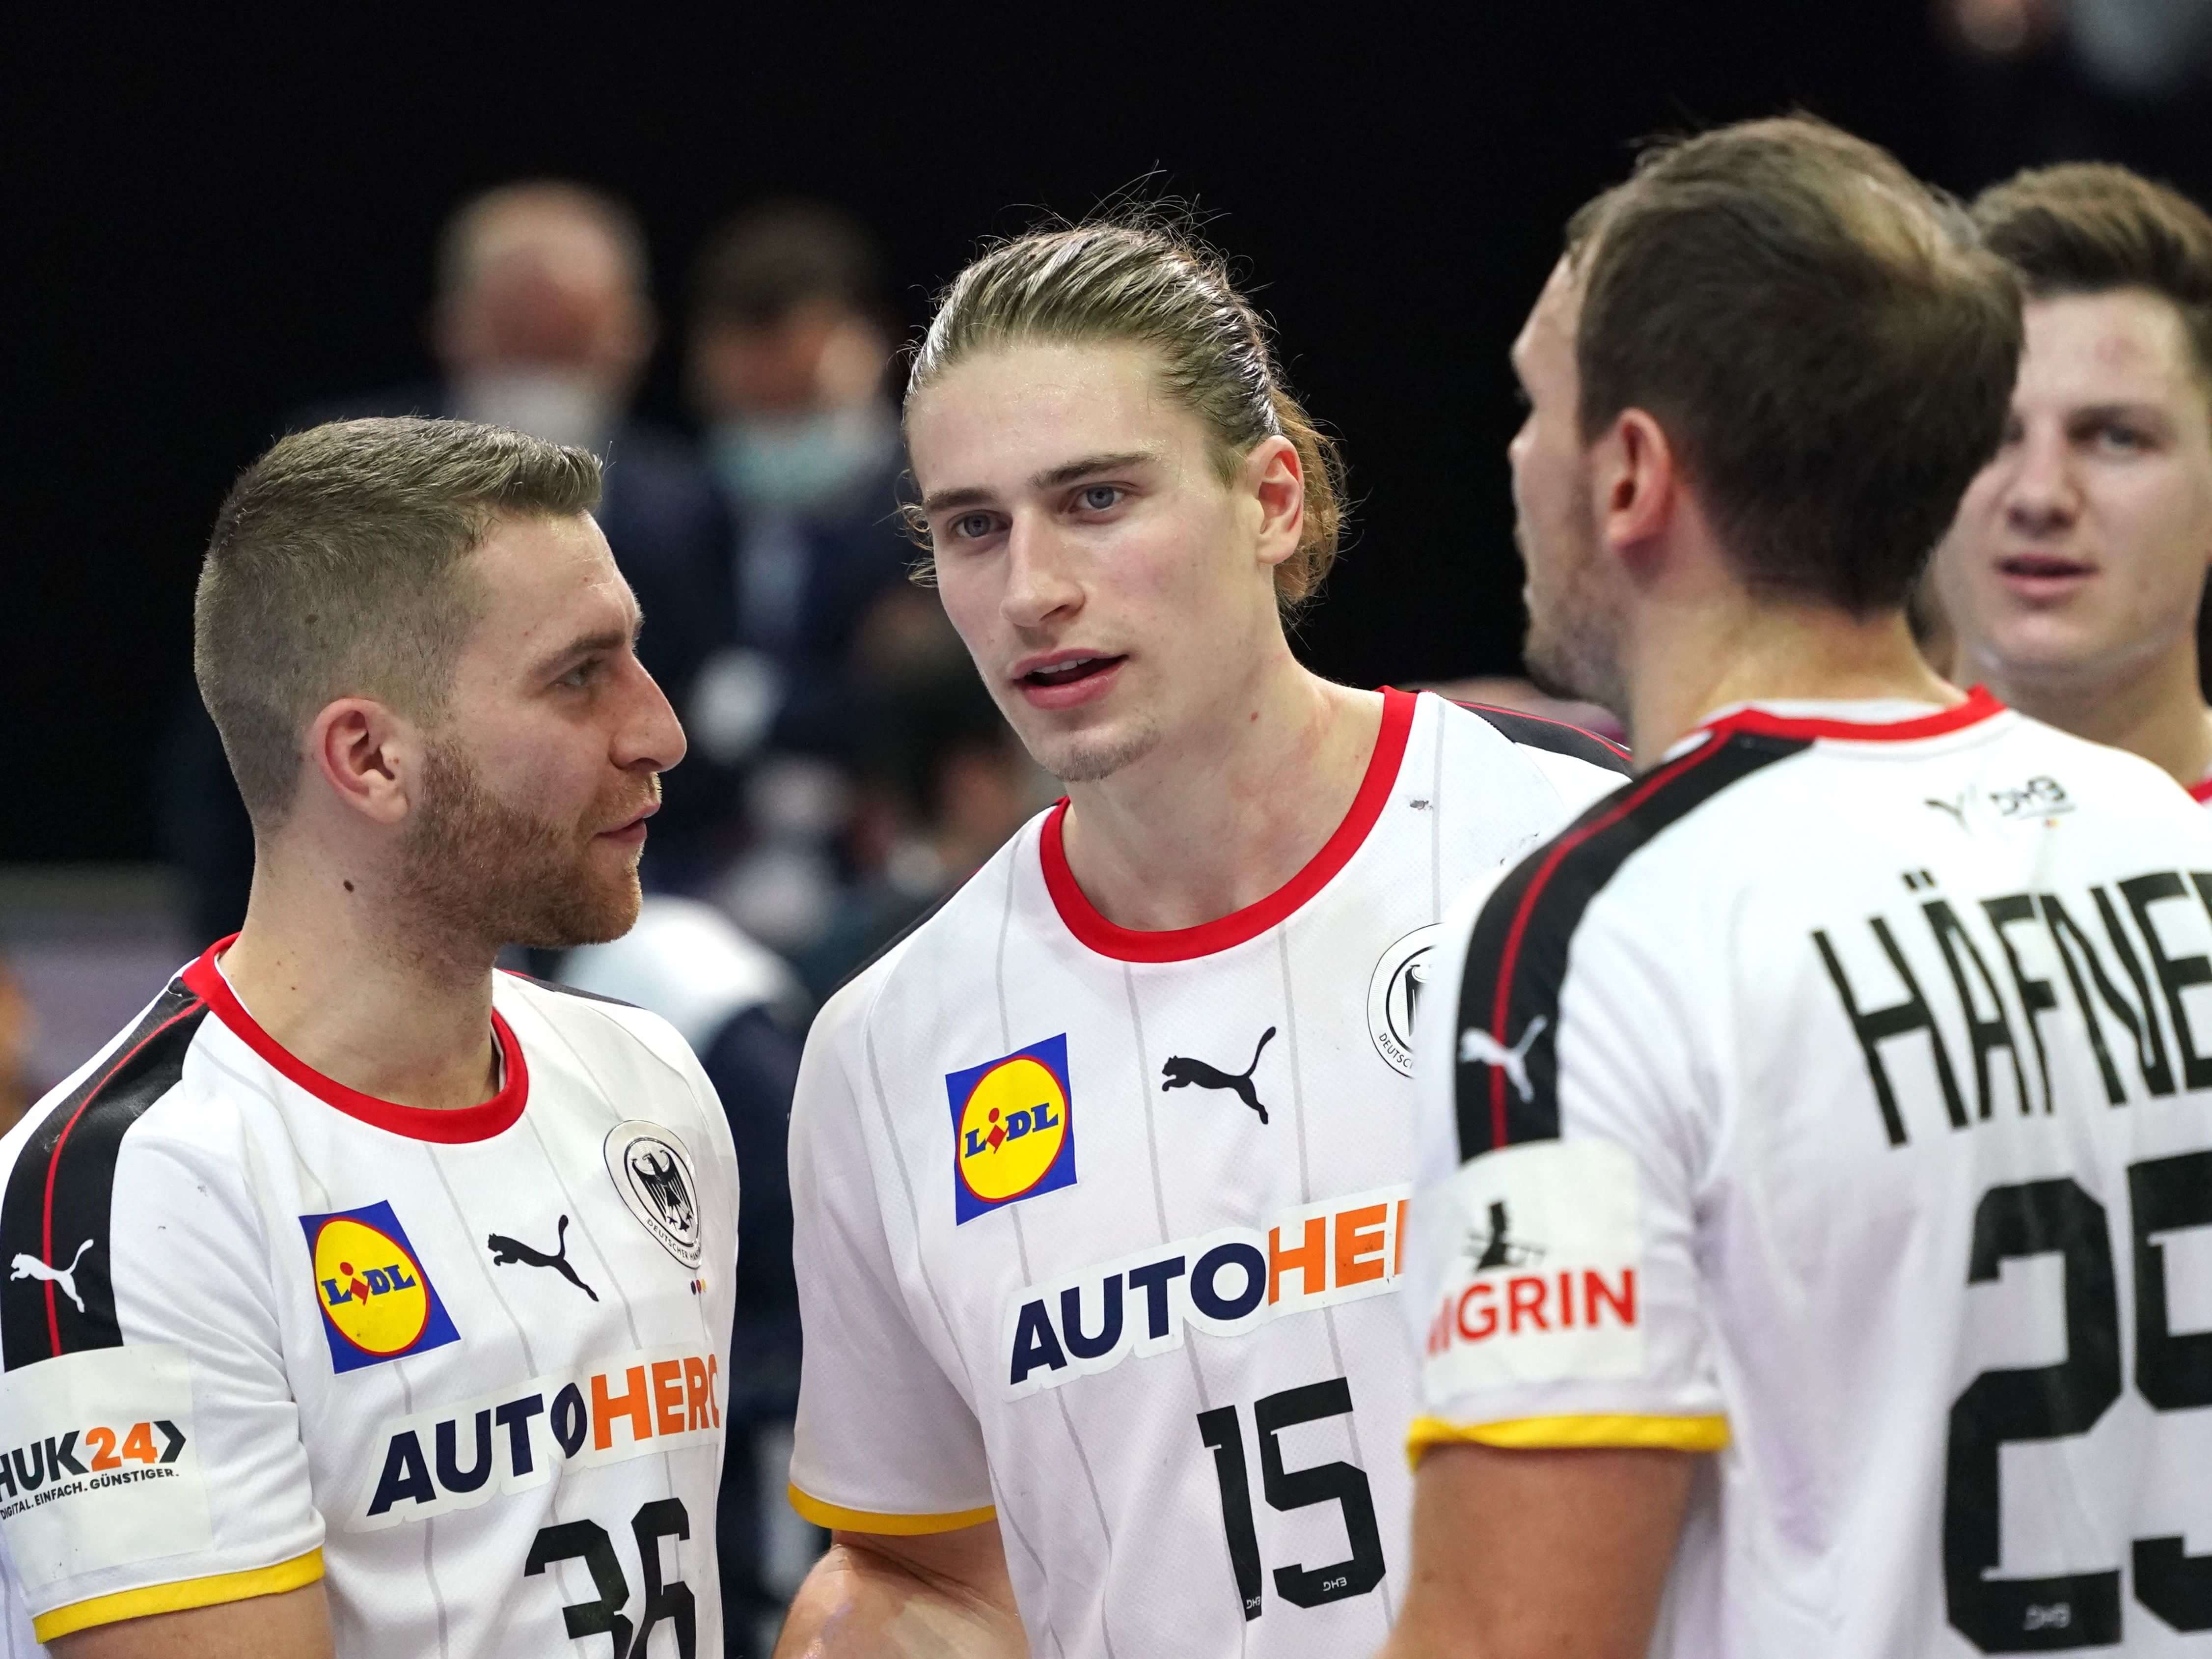 Sensationelle Einschaltquote! WM-Spiel der deutschen Handballer knackt Schallmauer Sports Illustrated